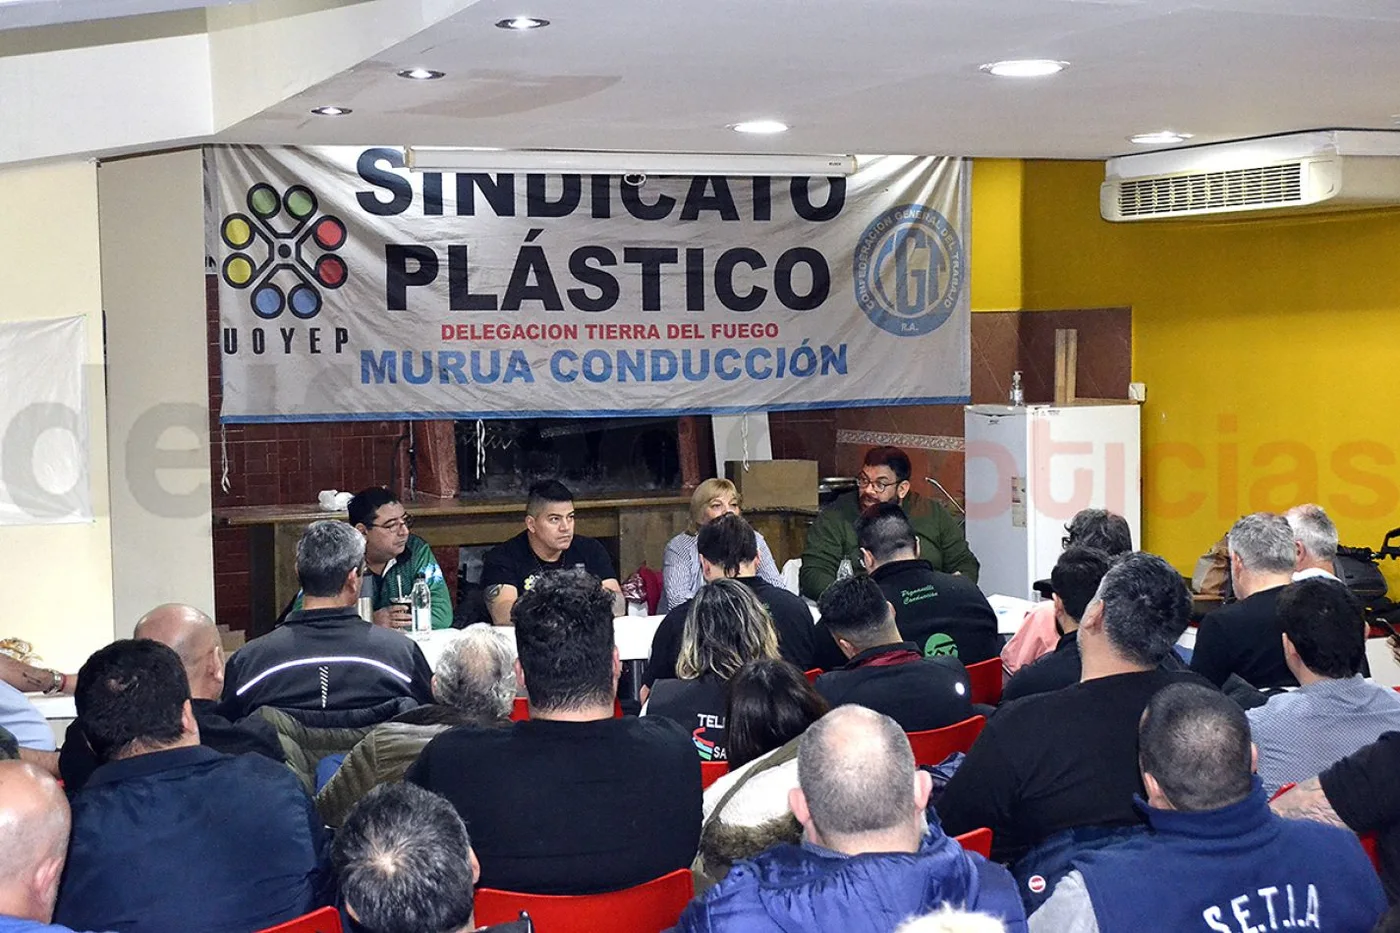 La sede del sindicato de los Plásticos fue el escenario de la elección del triunvirato de conducción de la CGT.